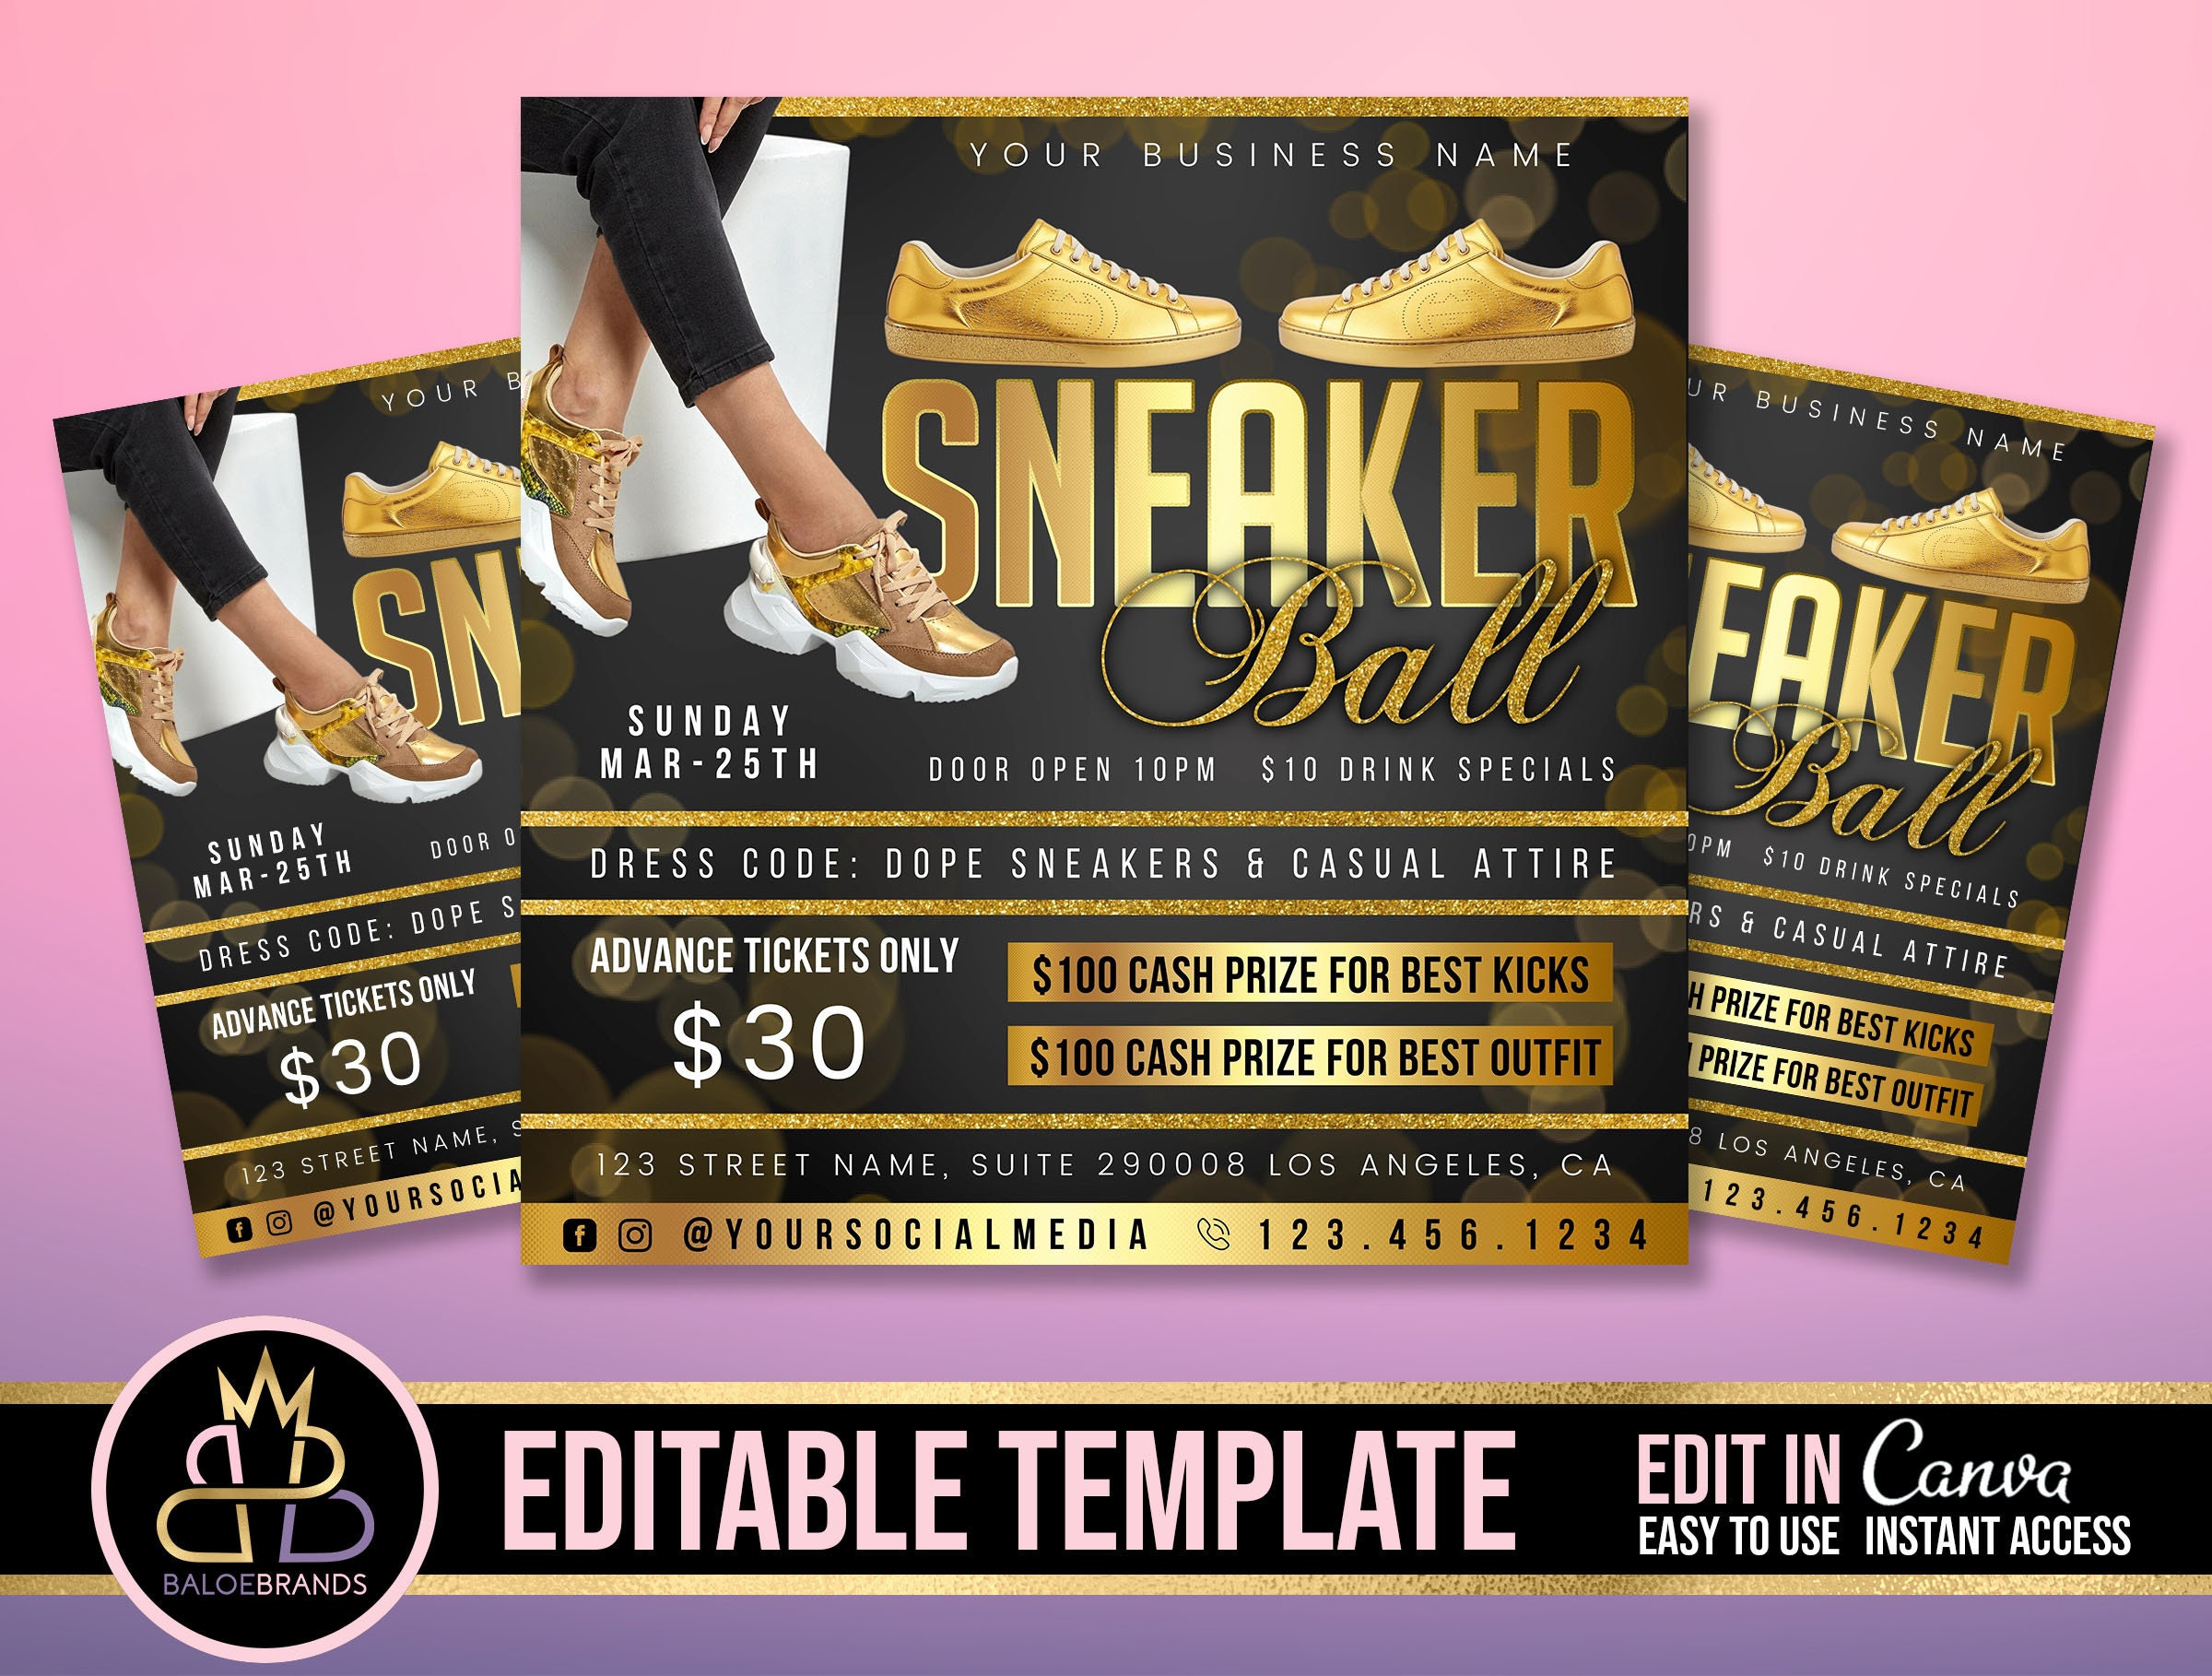 Editable Sneaker Ball Gala Sneaker Ball Invite Sneaker Ball Etsy